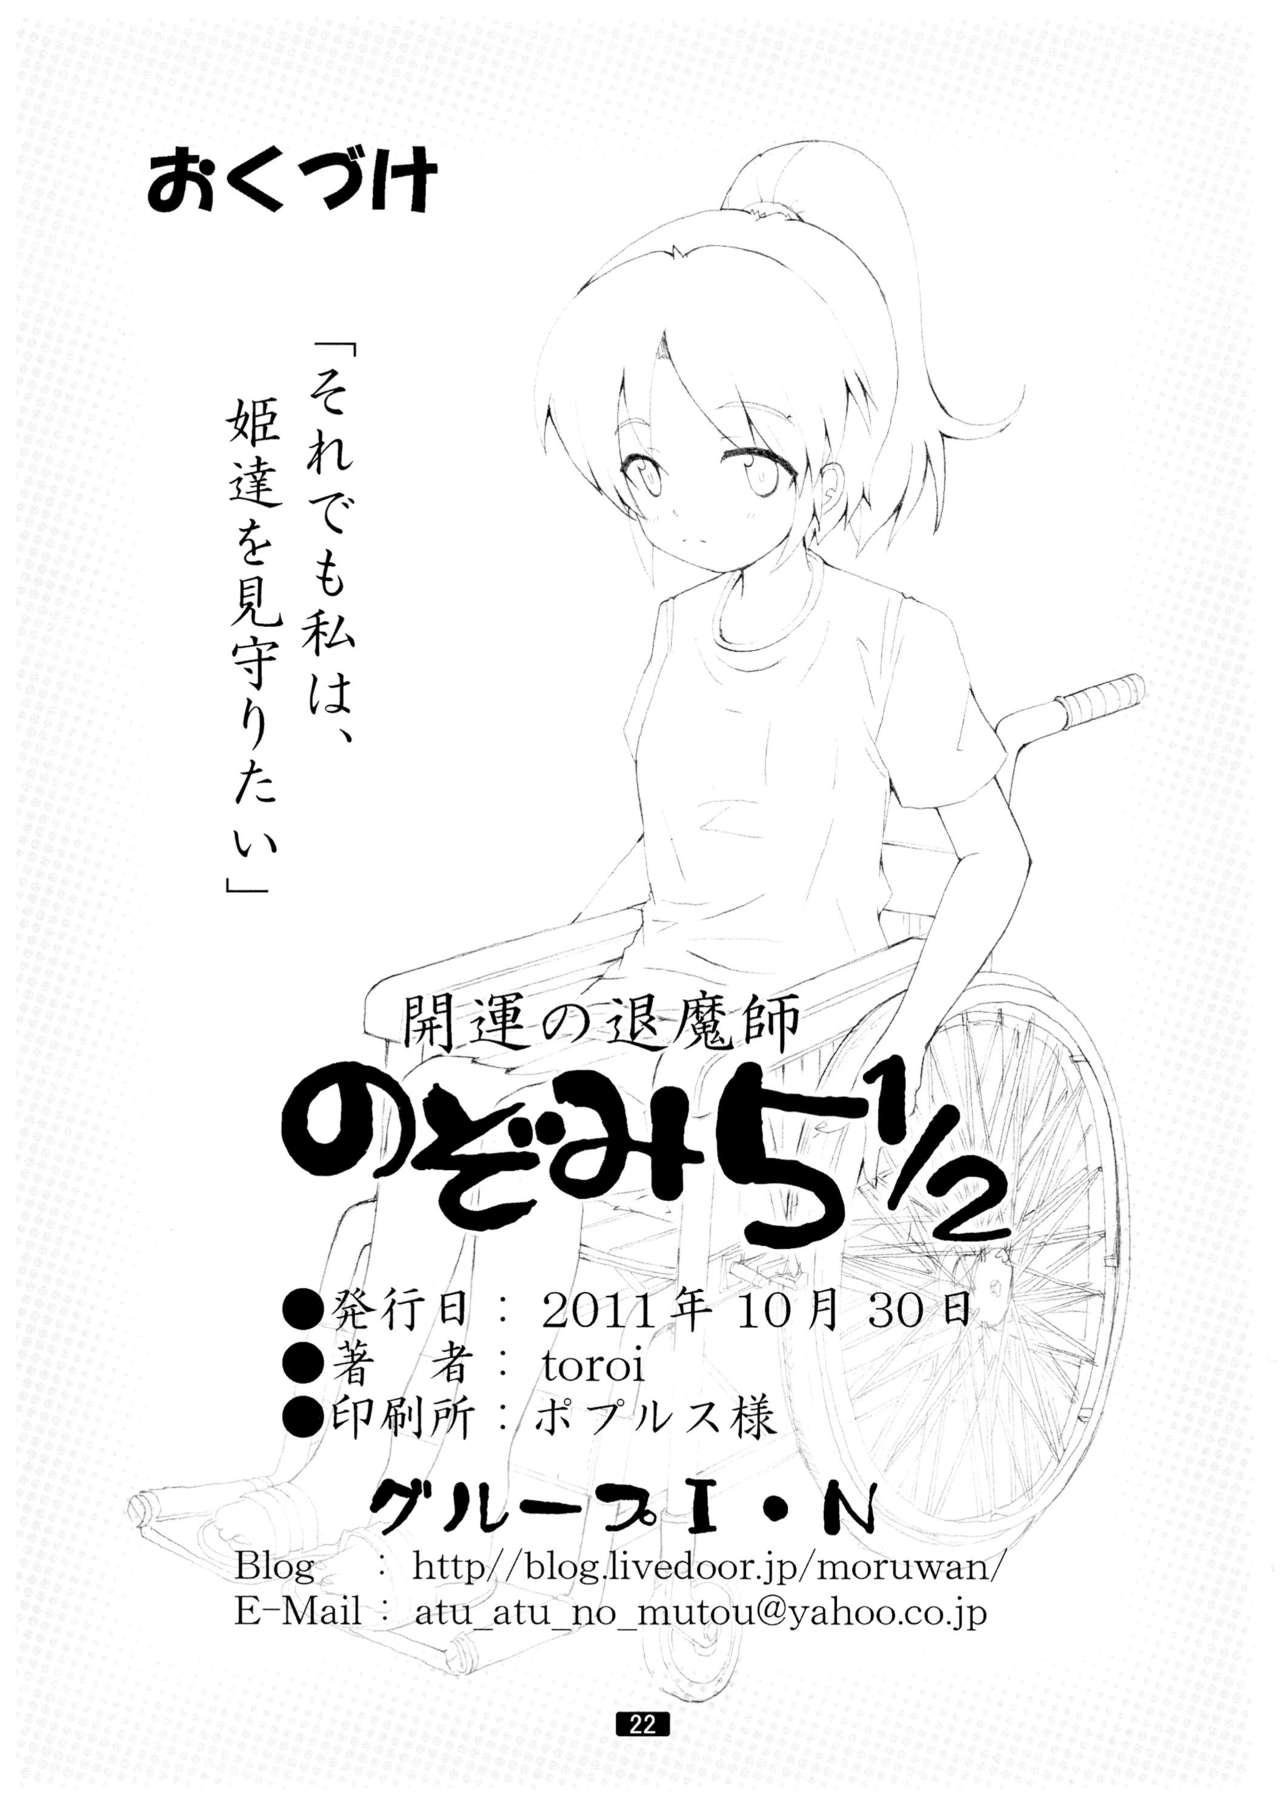 Anime Kaiun no Taimashi Nozomi 5 1/ 2 Highschool - Page 22